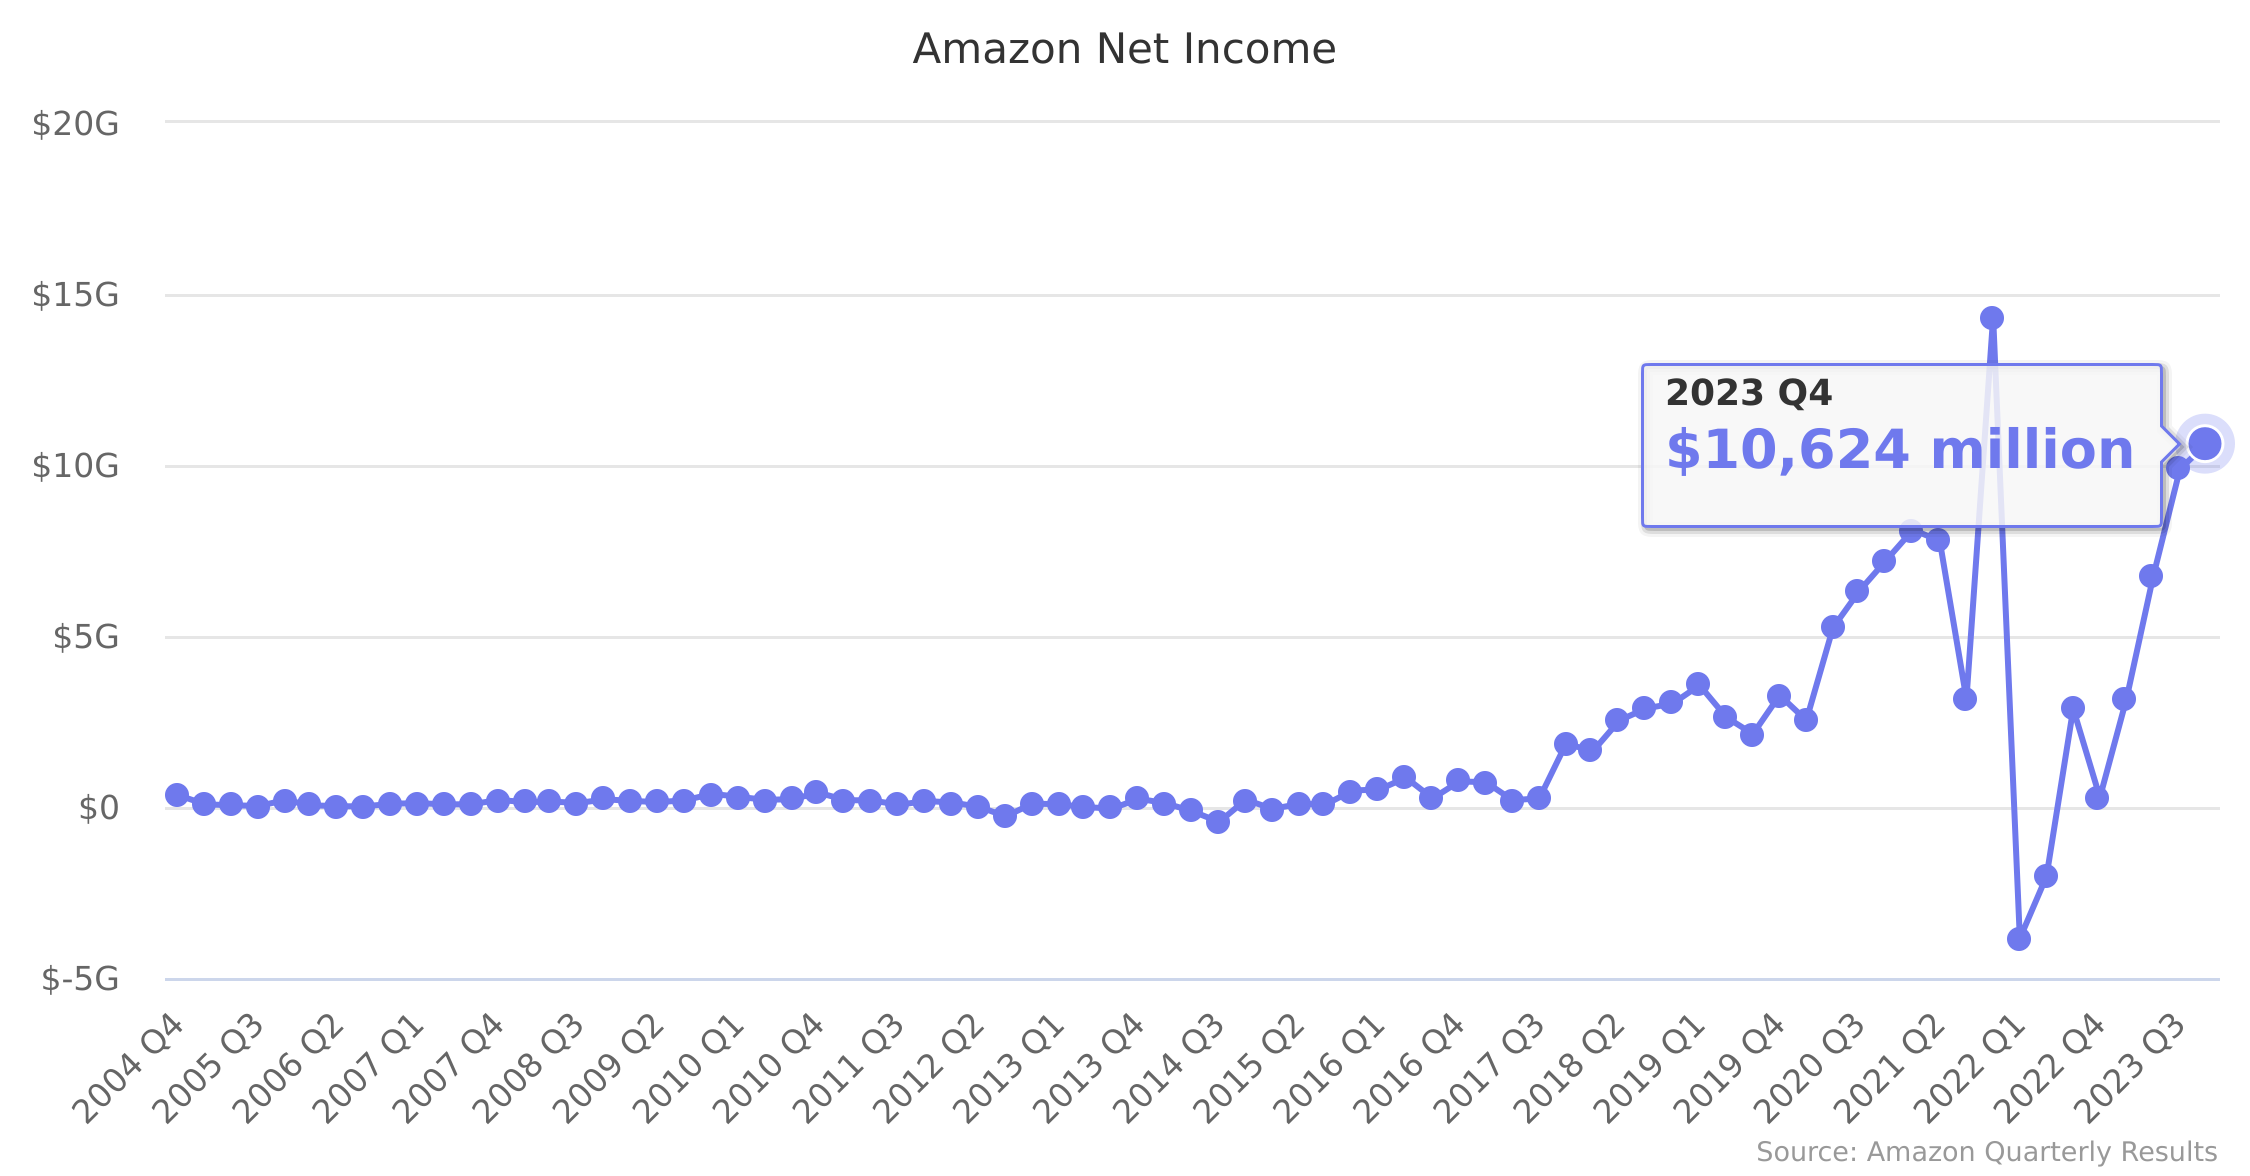 Amazon Net Income 2004-2023